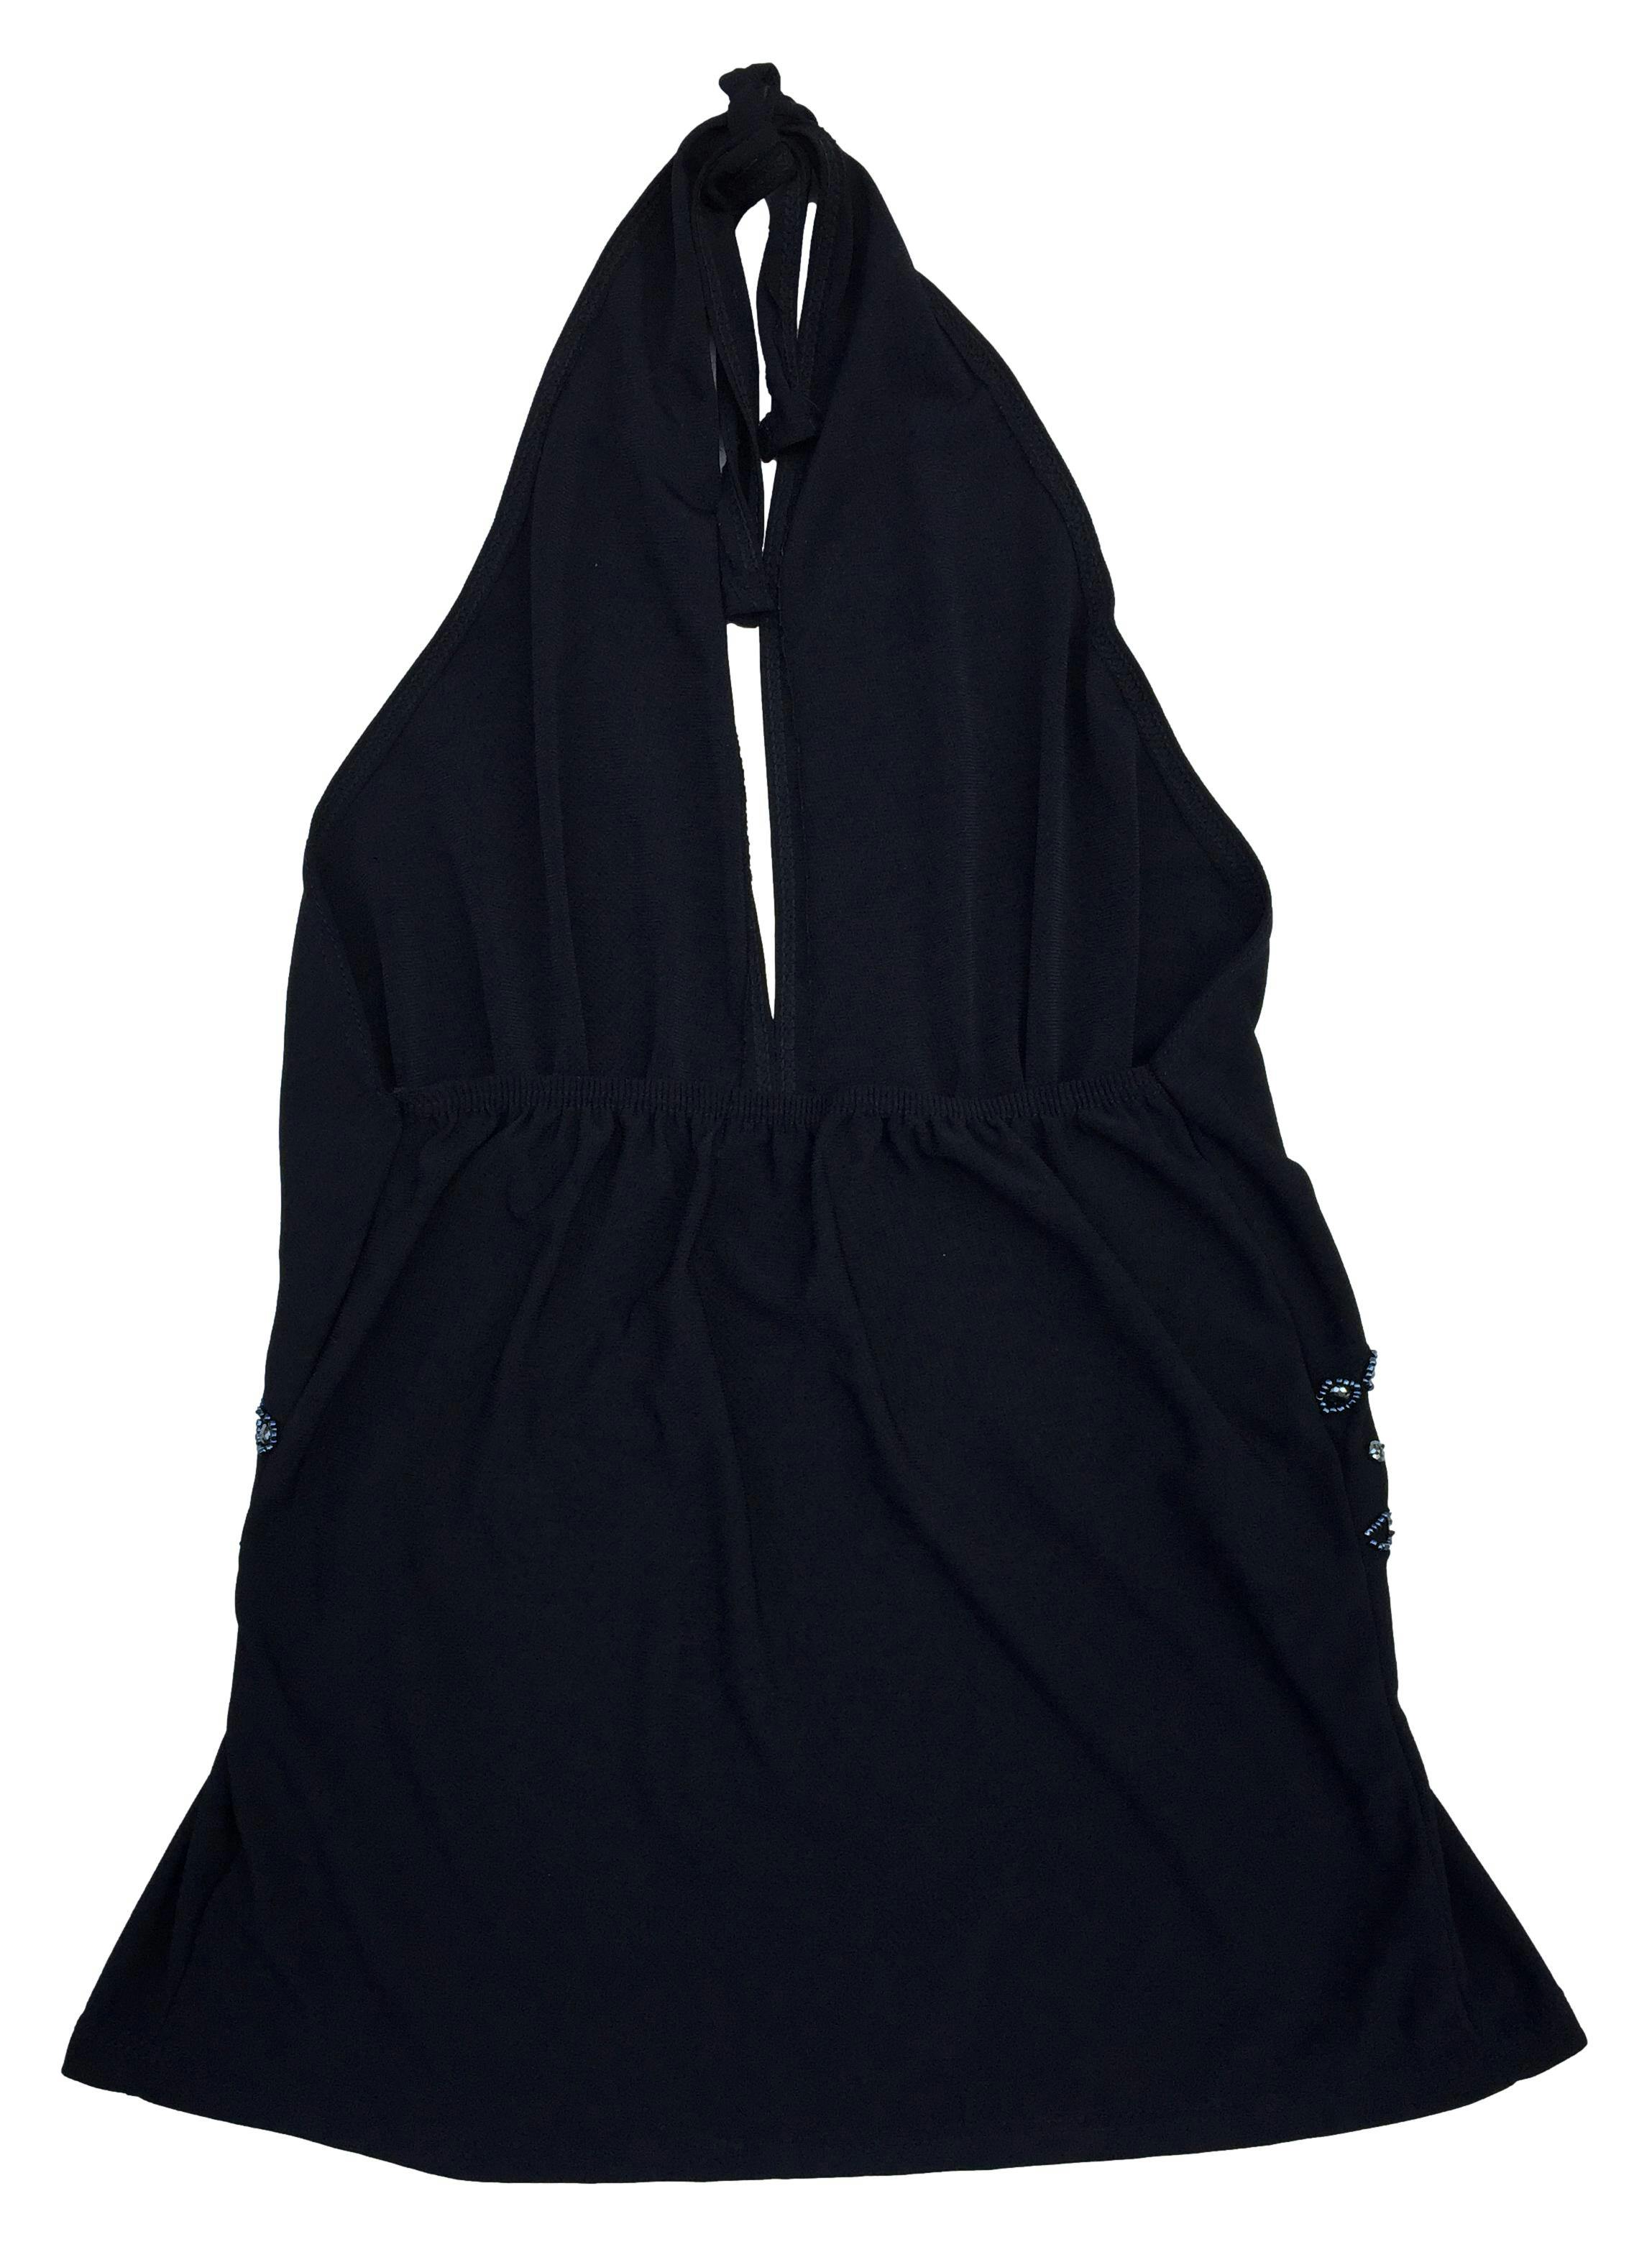 Top negro Adriana con aplicaciones de  mostacillas y cordones en el cuello para anudarse. Busto: 64cm (sin estirar), Largo: 53cm